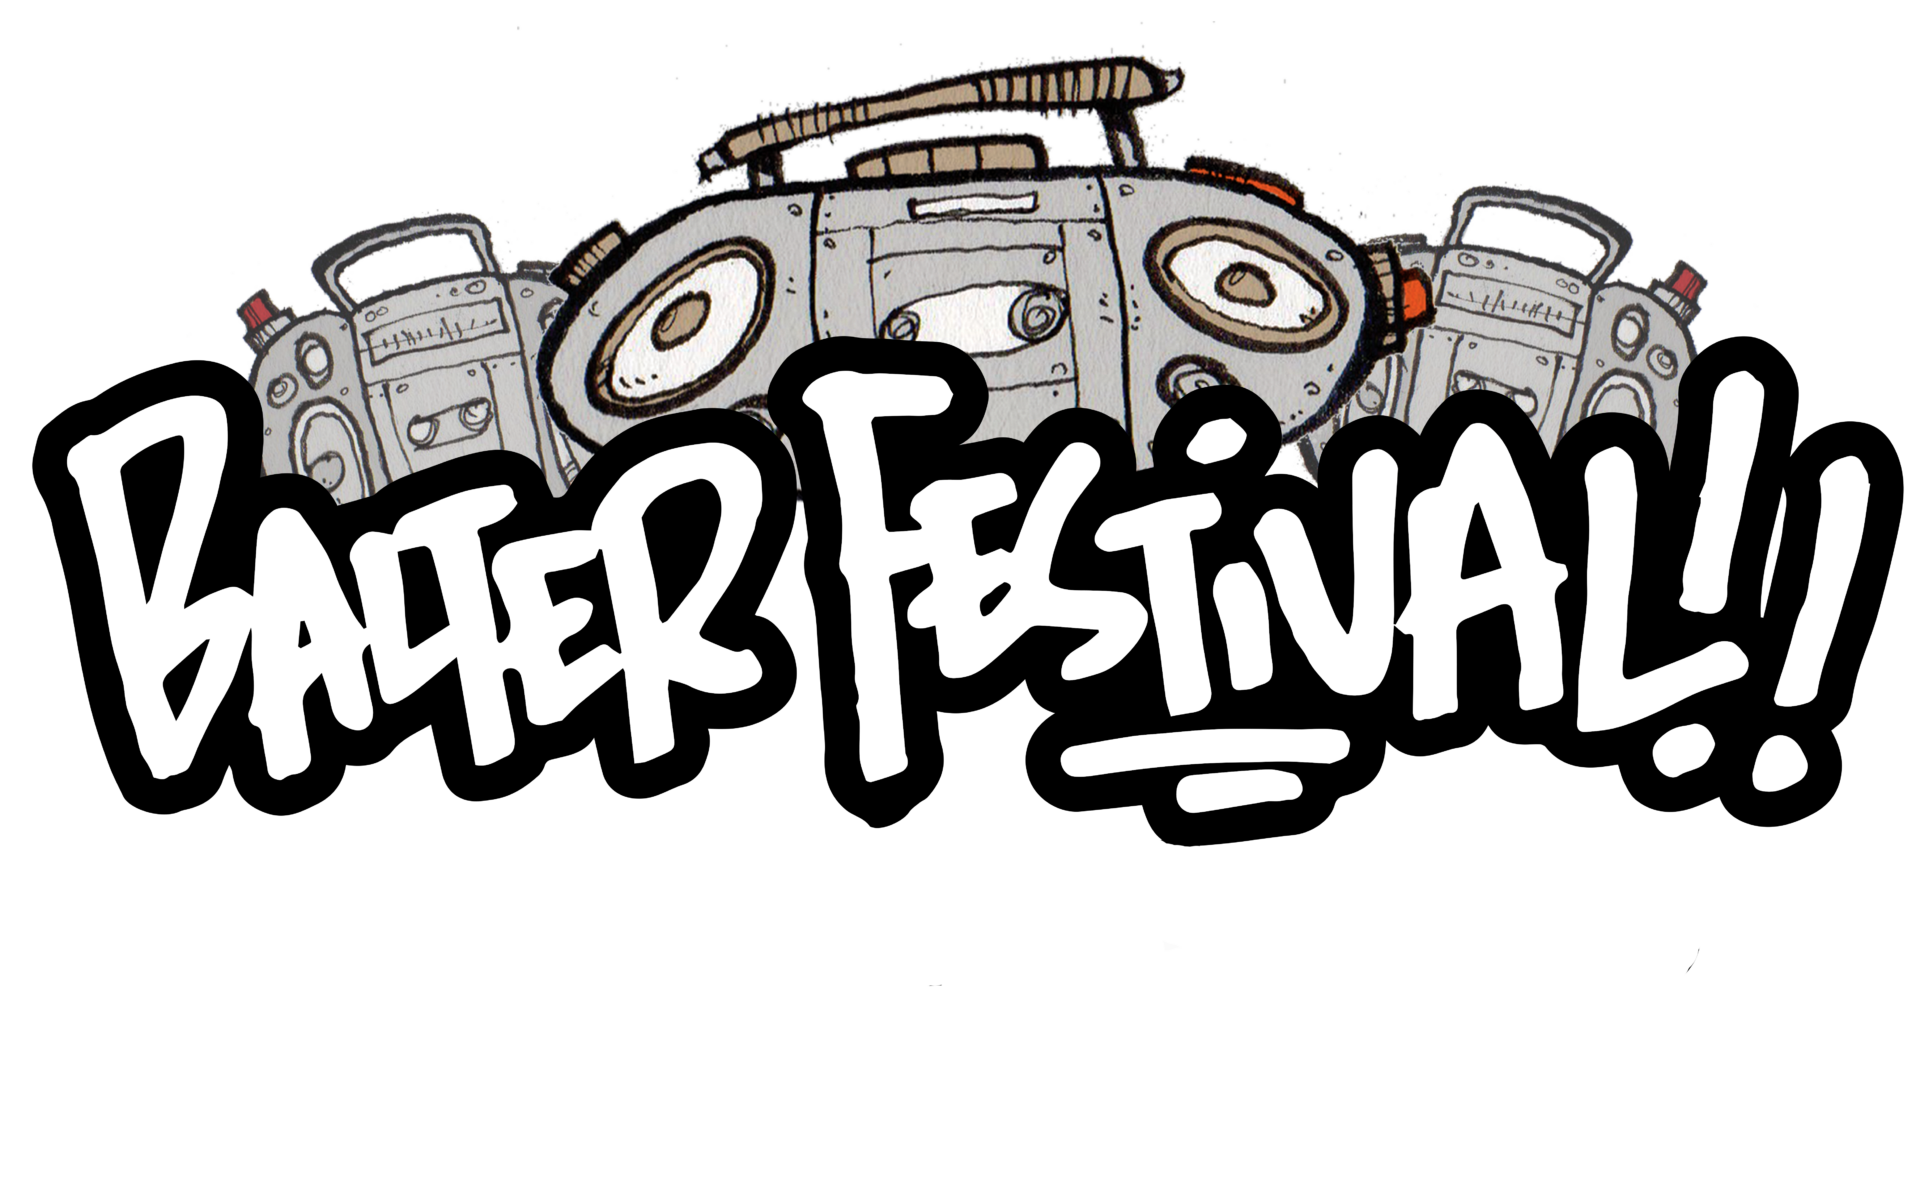 balter festival logo